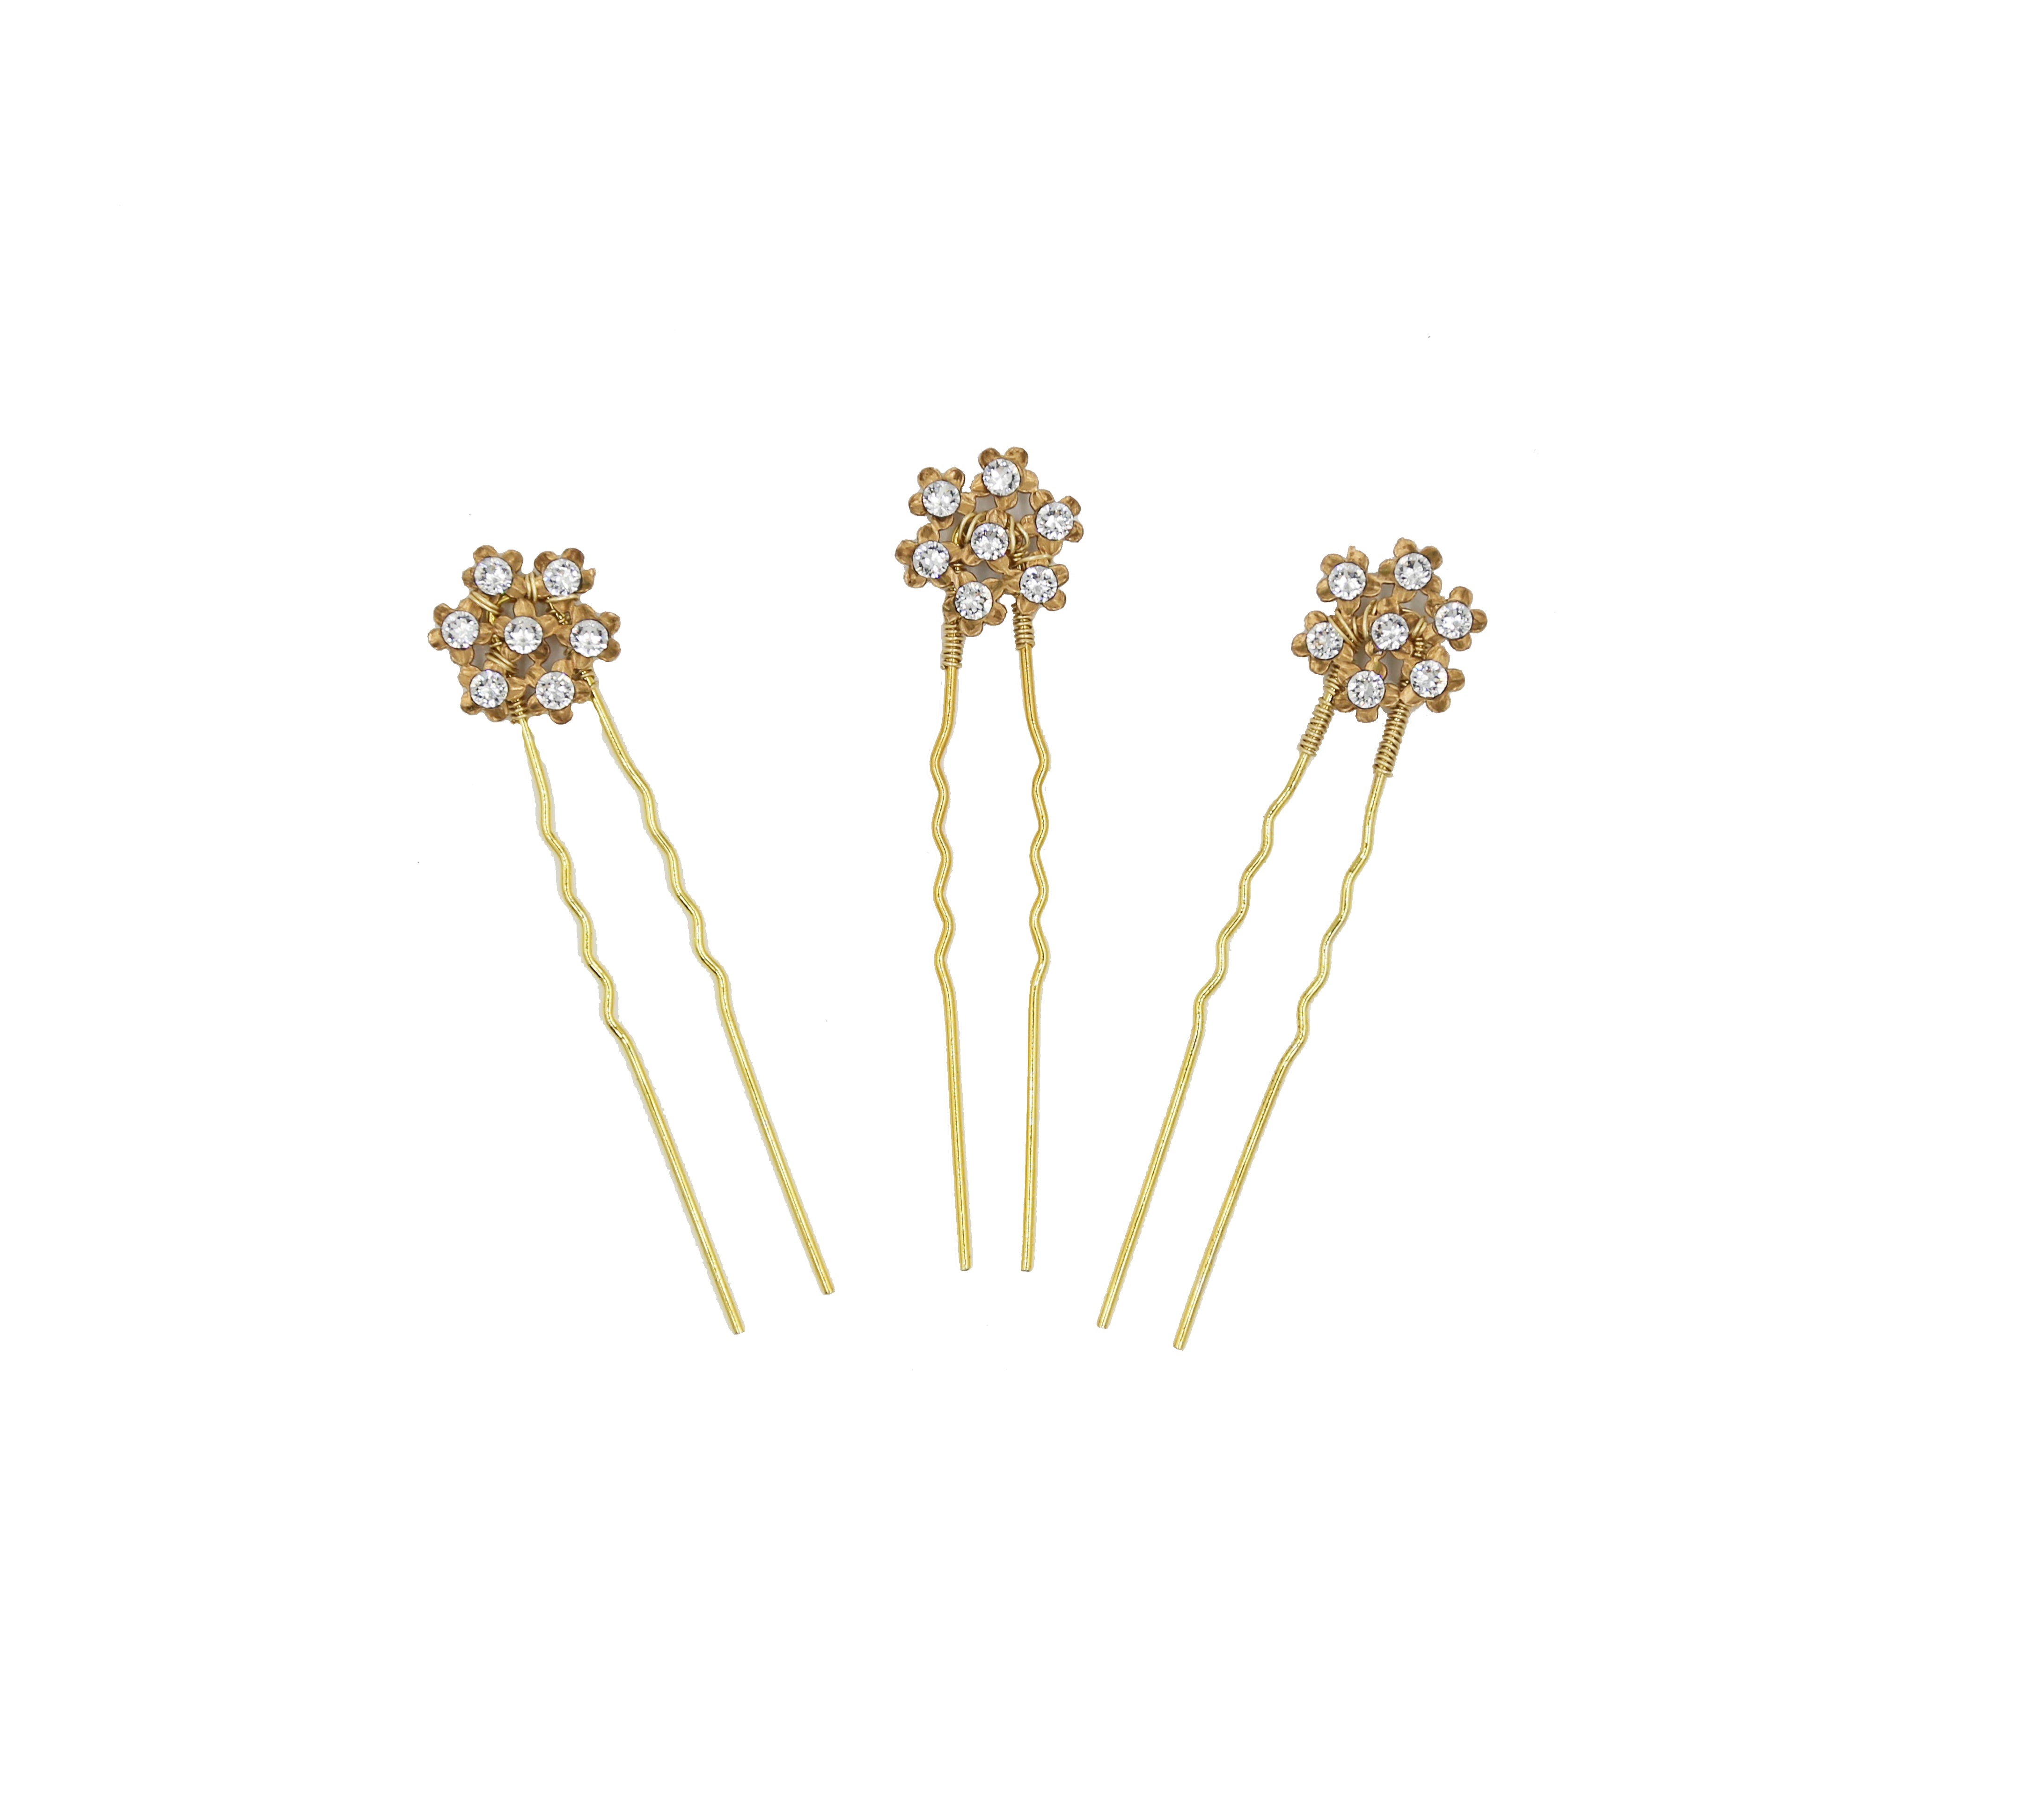 Cluster Flower Swarovski Hairpins - Set of Three